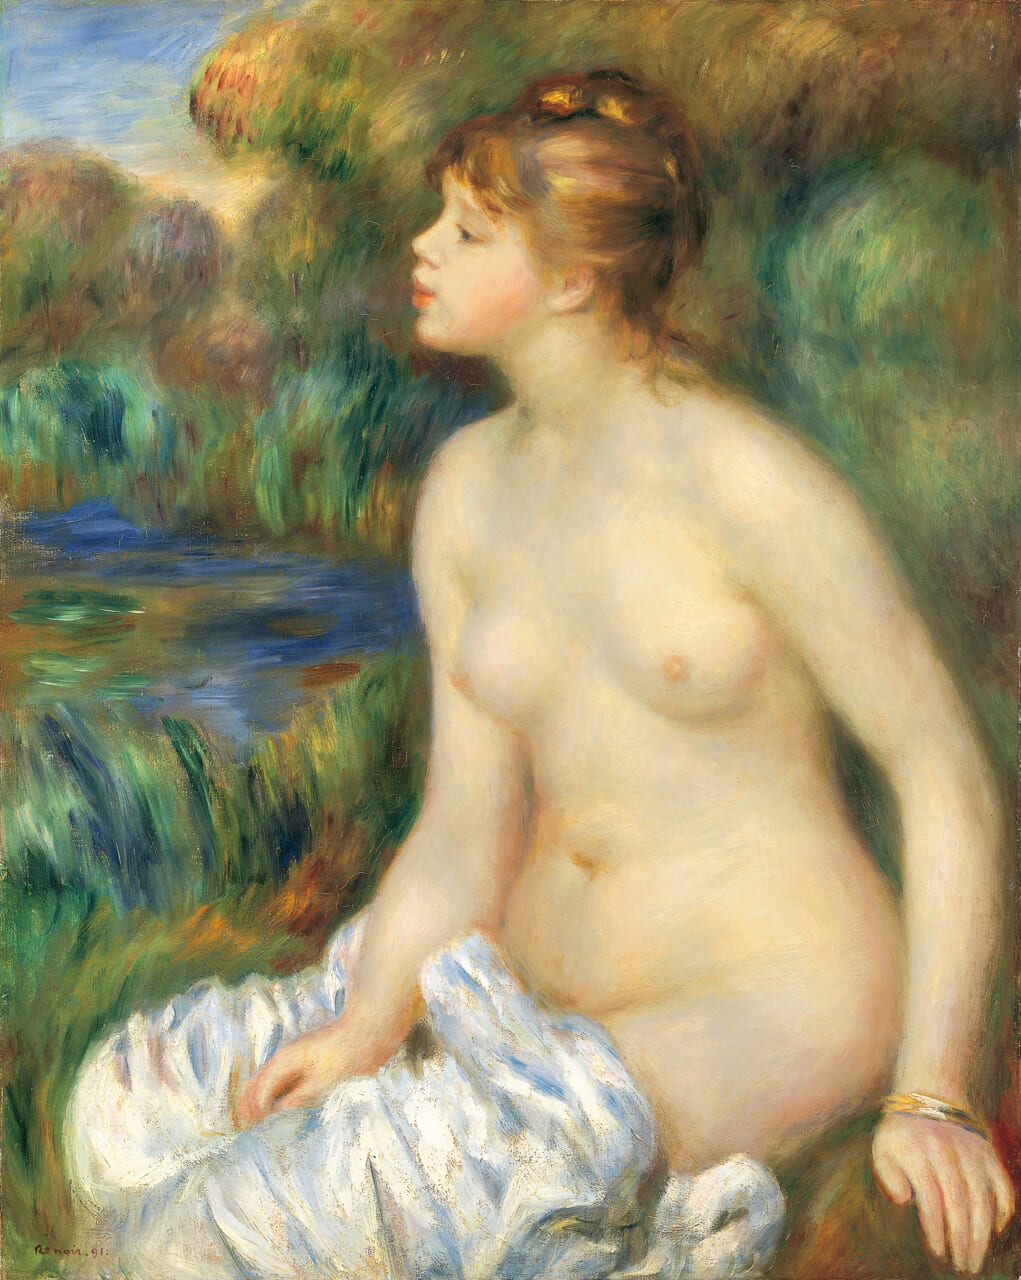 ピエール・オーギュスト・ルノワール《水浴する女》1891年　油彩、カンヴァス　80.9 × 65.6cm